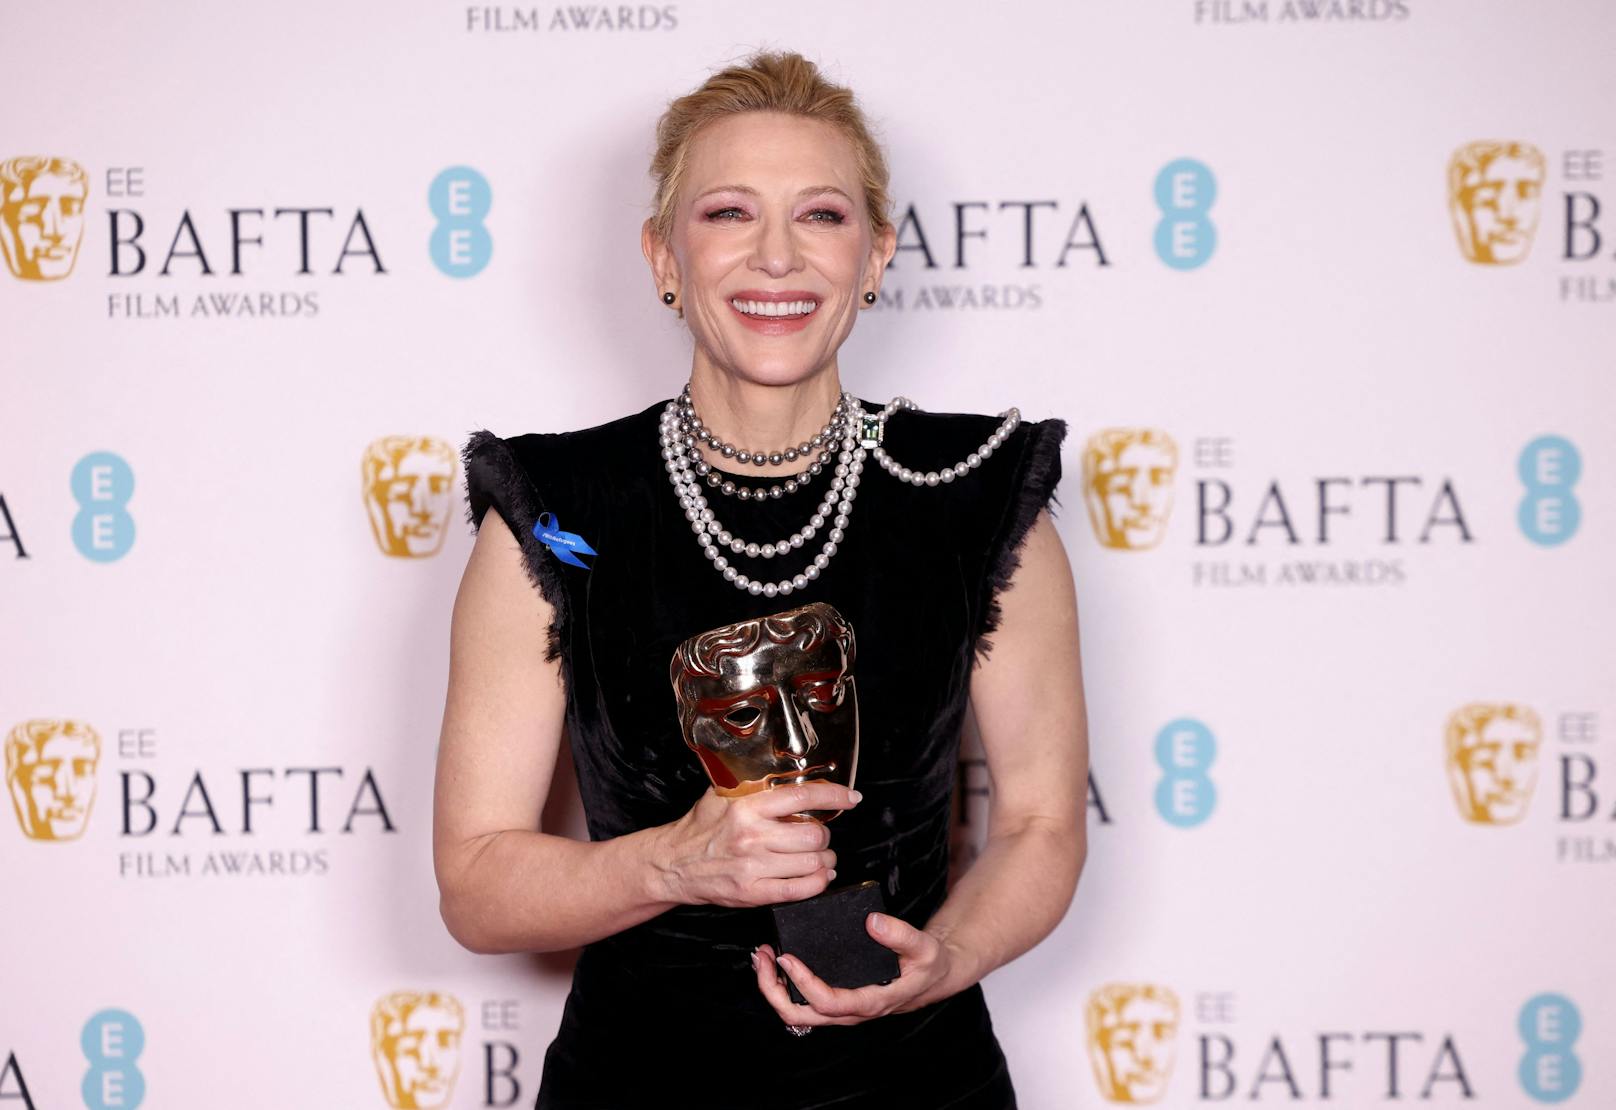 Für ihre Performance in "Tár" wurde Cate Blanchett der Titel "Beste Hauptdarstellerin" verliehen.